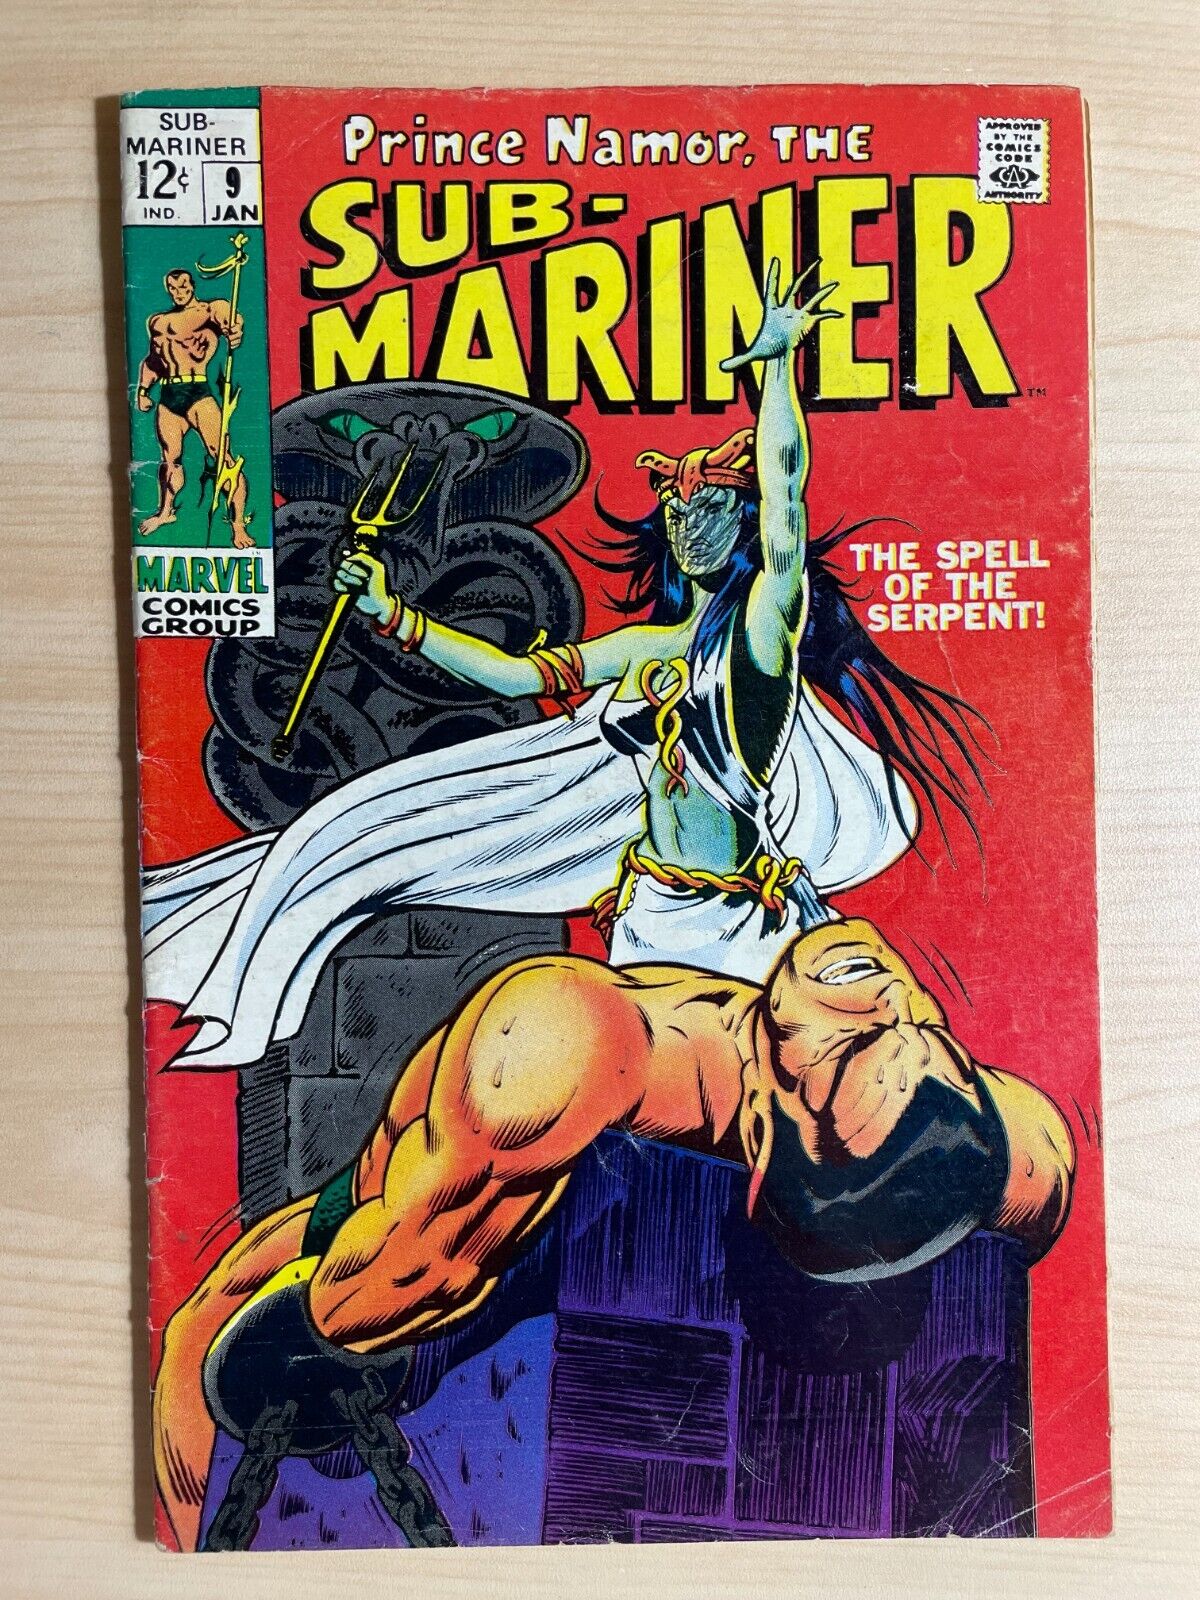 SUB-MARINER #9, 1969, Marvel Comics